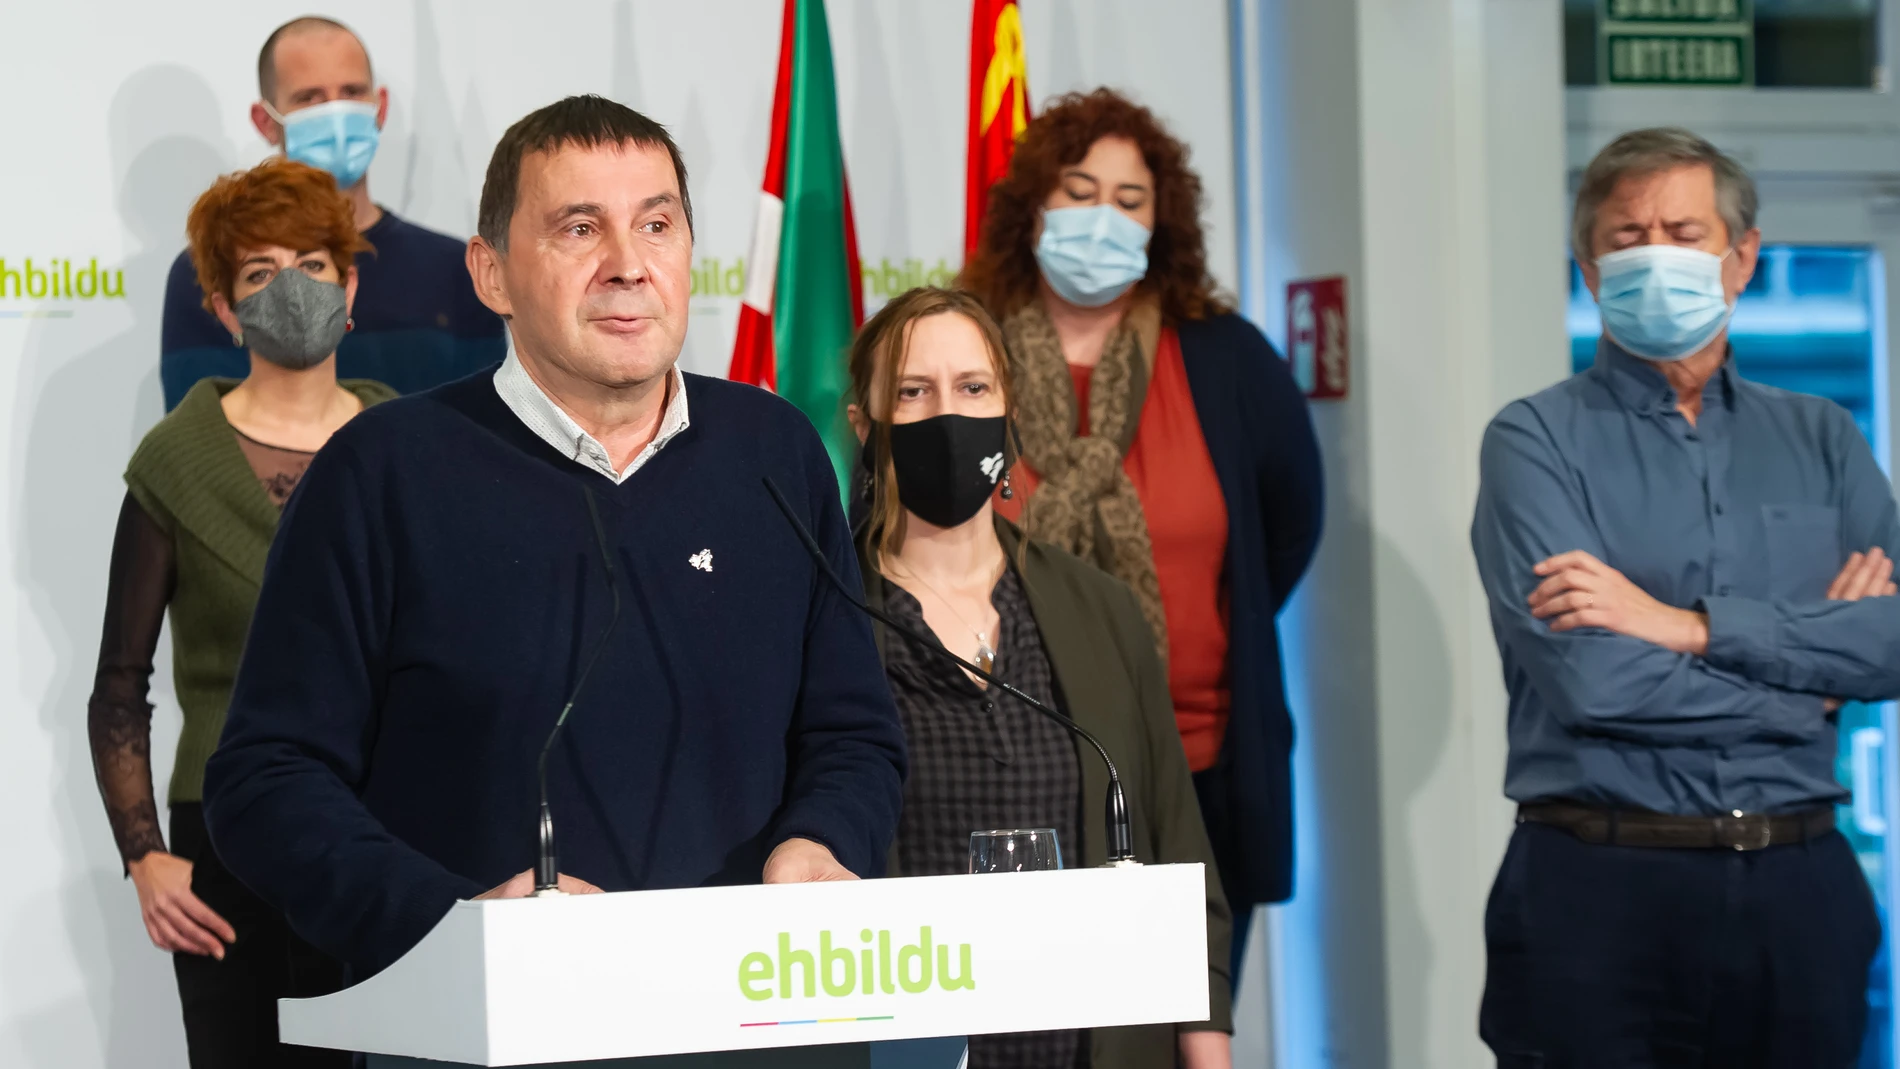 El coordinador general de EH Bildu, Arnaldo Otegi (1i), junto a los encausados del caso Bateragune Sonia Jacinto (3d) y Rafa Síez Usabiaga (1d), en la sede de EH Bildu, Donosti, Euskadi (España), tras la decisión del Supremo de que fuesen juzgados de nuevo